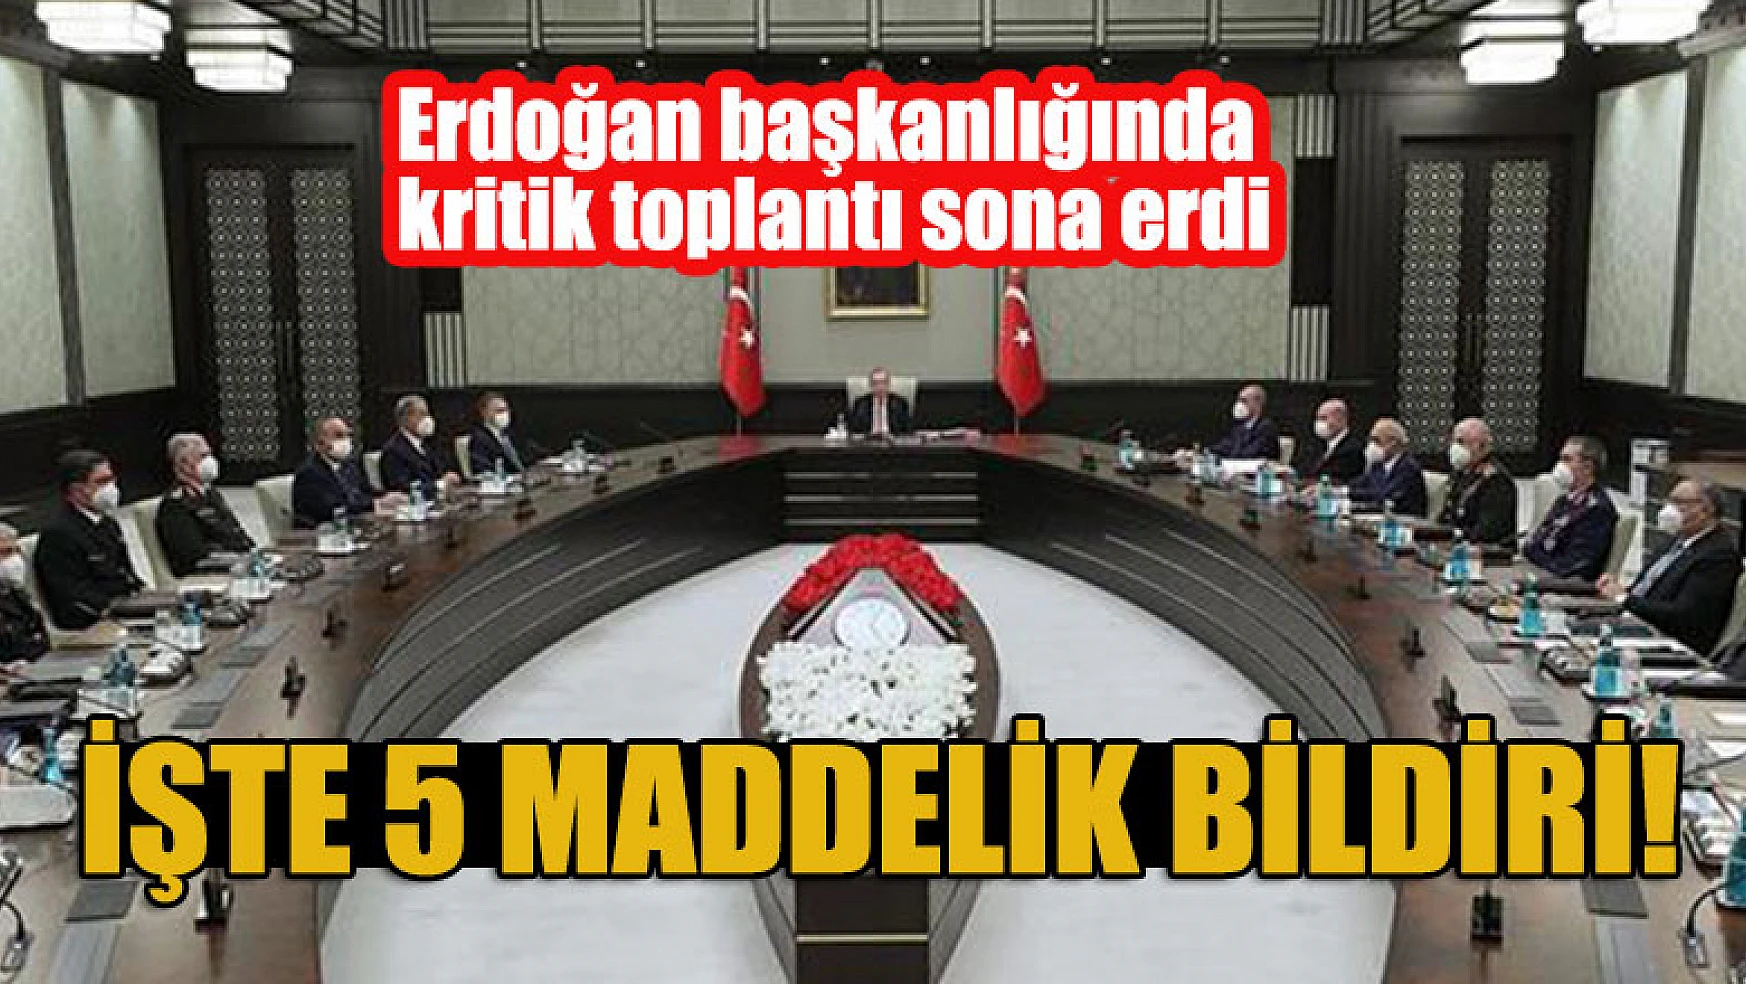 Erdoğan başkanlığında kritik toplantı! 5 maddelik bildiri!